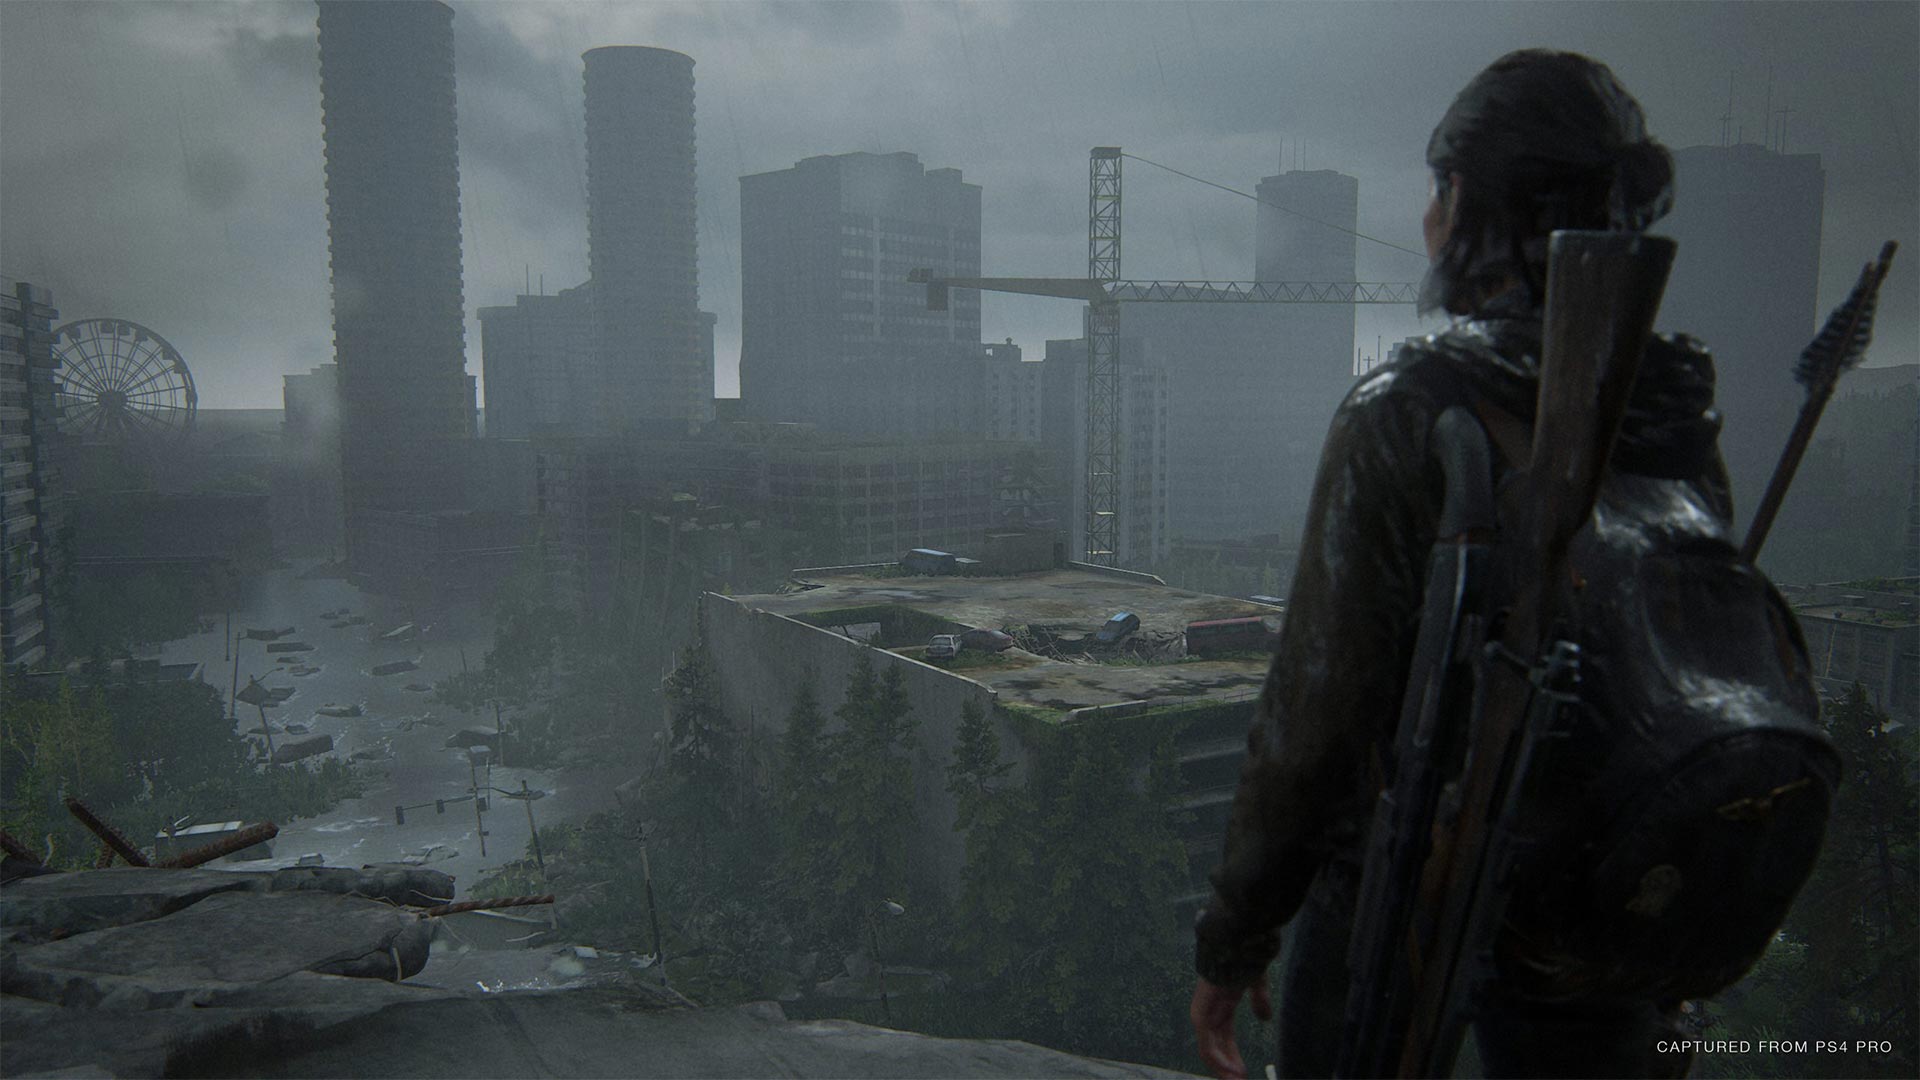 بازی The Last of Us Part 2 به سومین بازی پر فروش تاریخ سونی تبدیل شد